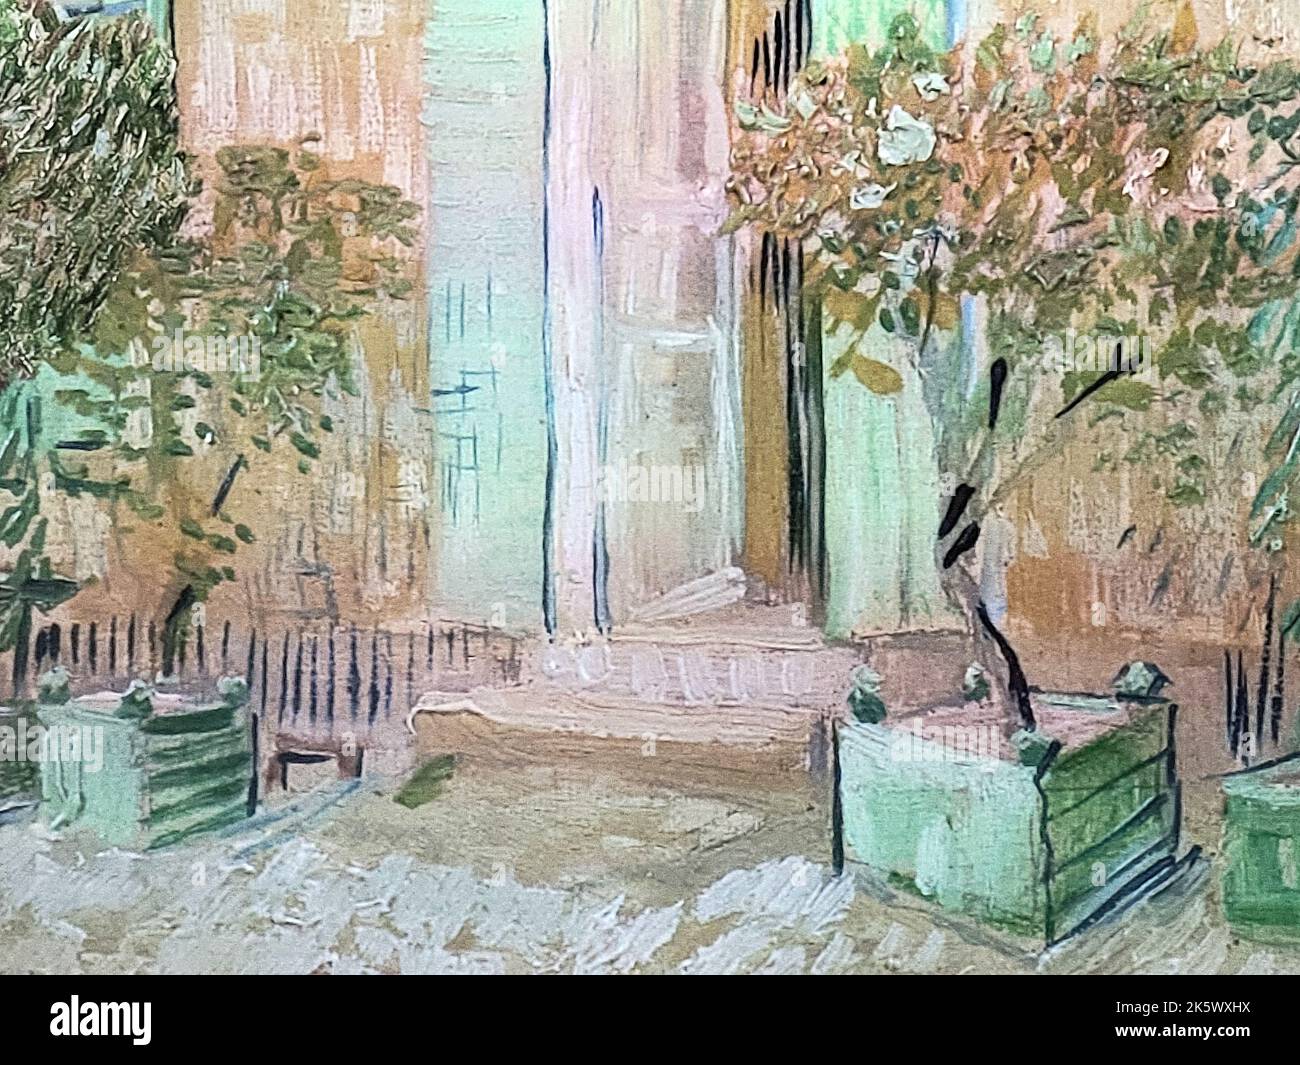 Oeuvre d'art impressionniste d'une porte avec arbres en pot Banque D'Images